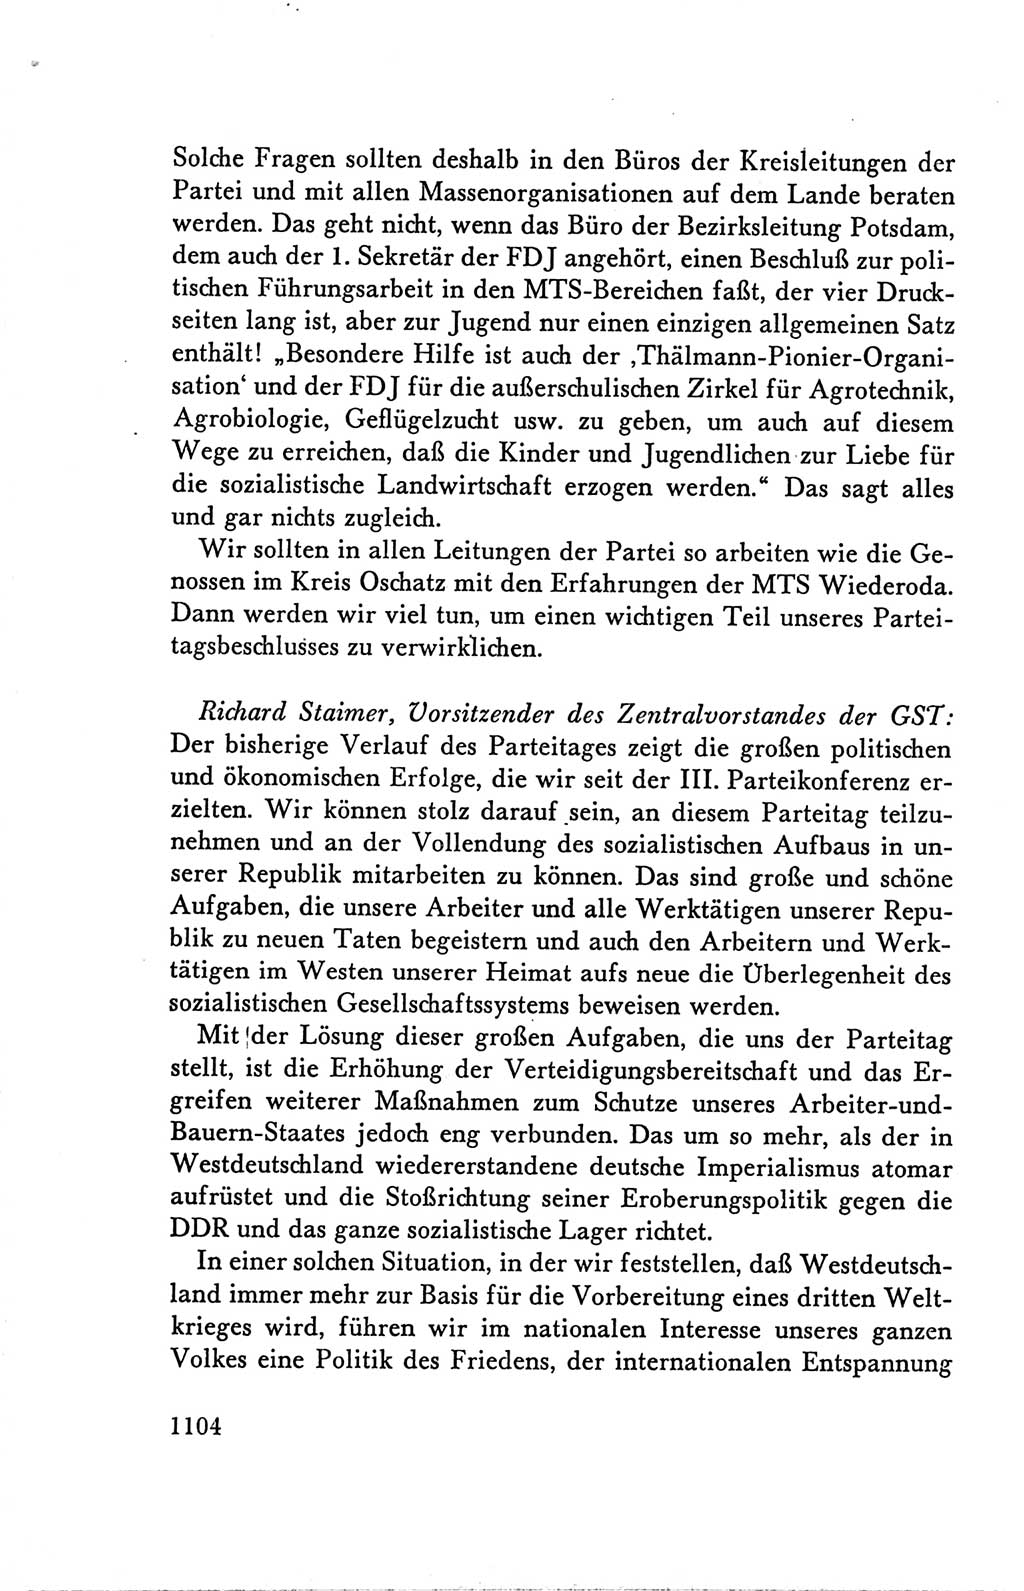 Protokoll der Verhandlungen des Ⅴ. Parteitages der Sozialistischen Einheitspartei Deutschlands (SED) [Deutsche Demokratische Republik (DDR)] 1958, Seite 1104